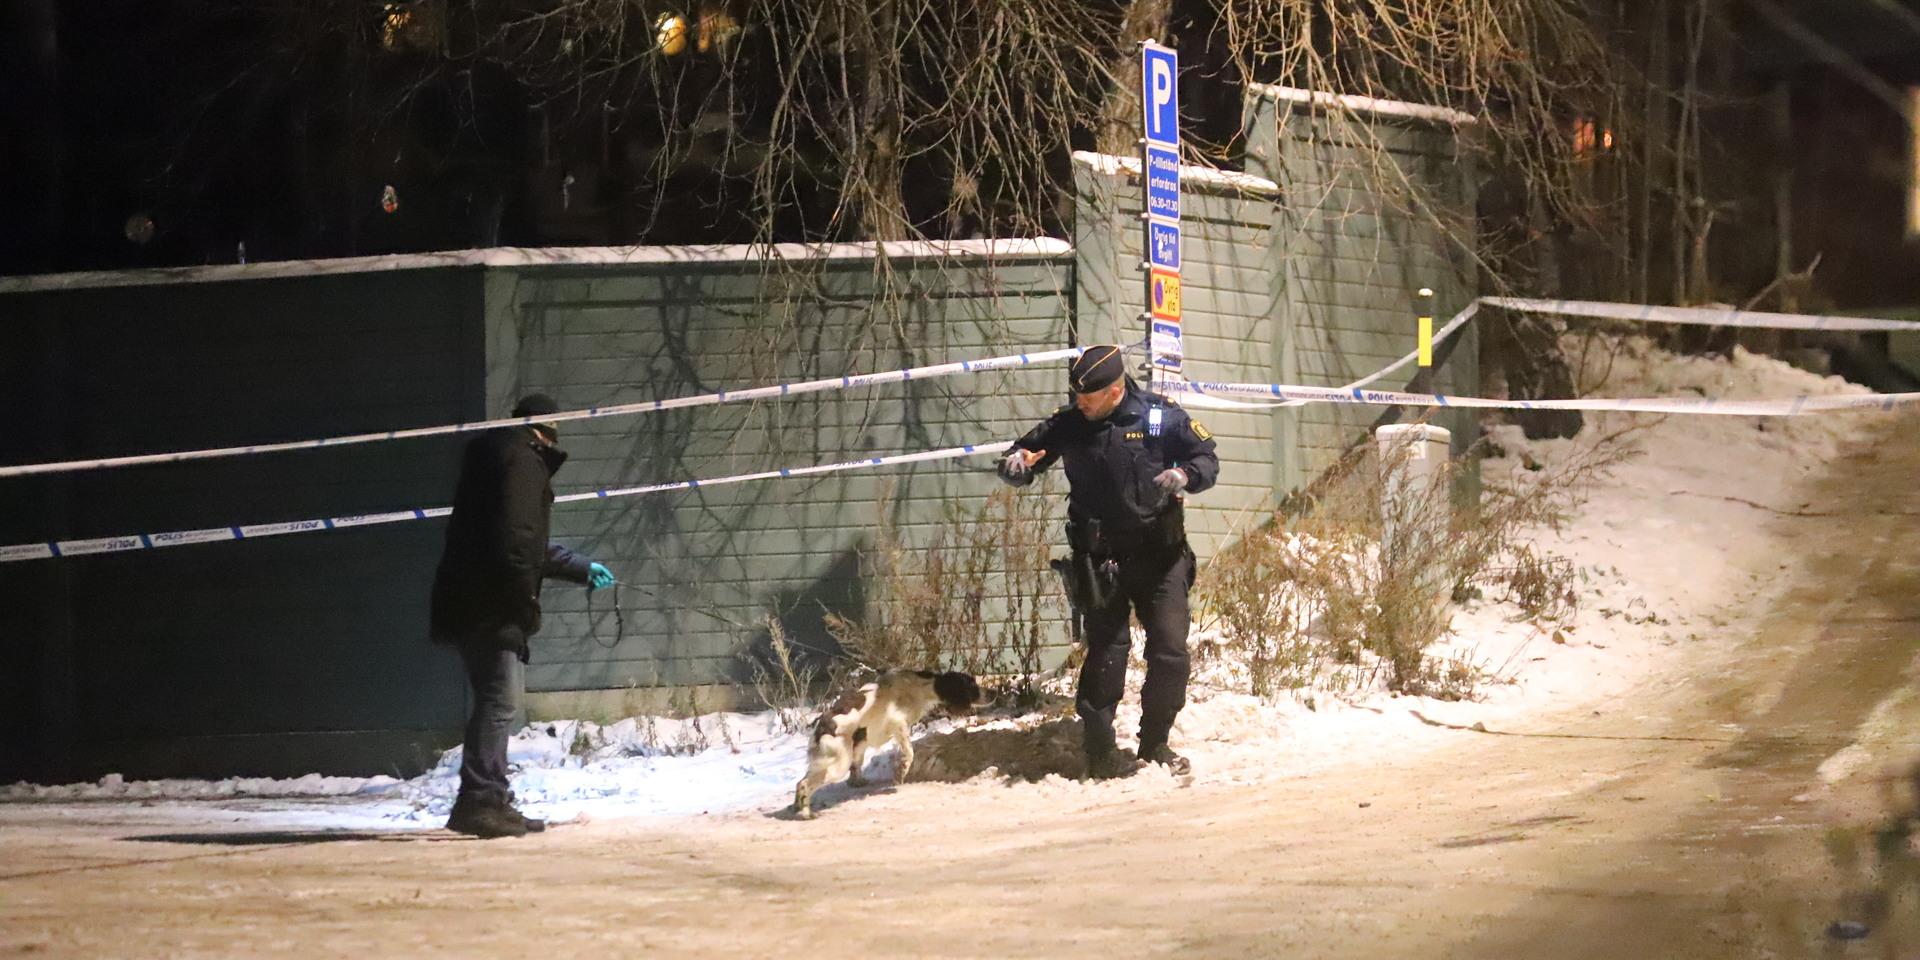 Polis vid platsen i Stuvsta där en man i ett fordon sköts på onsdagskvällen.